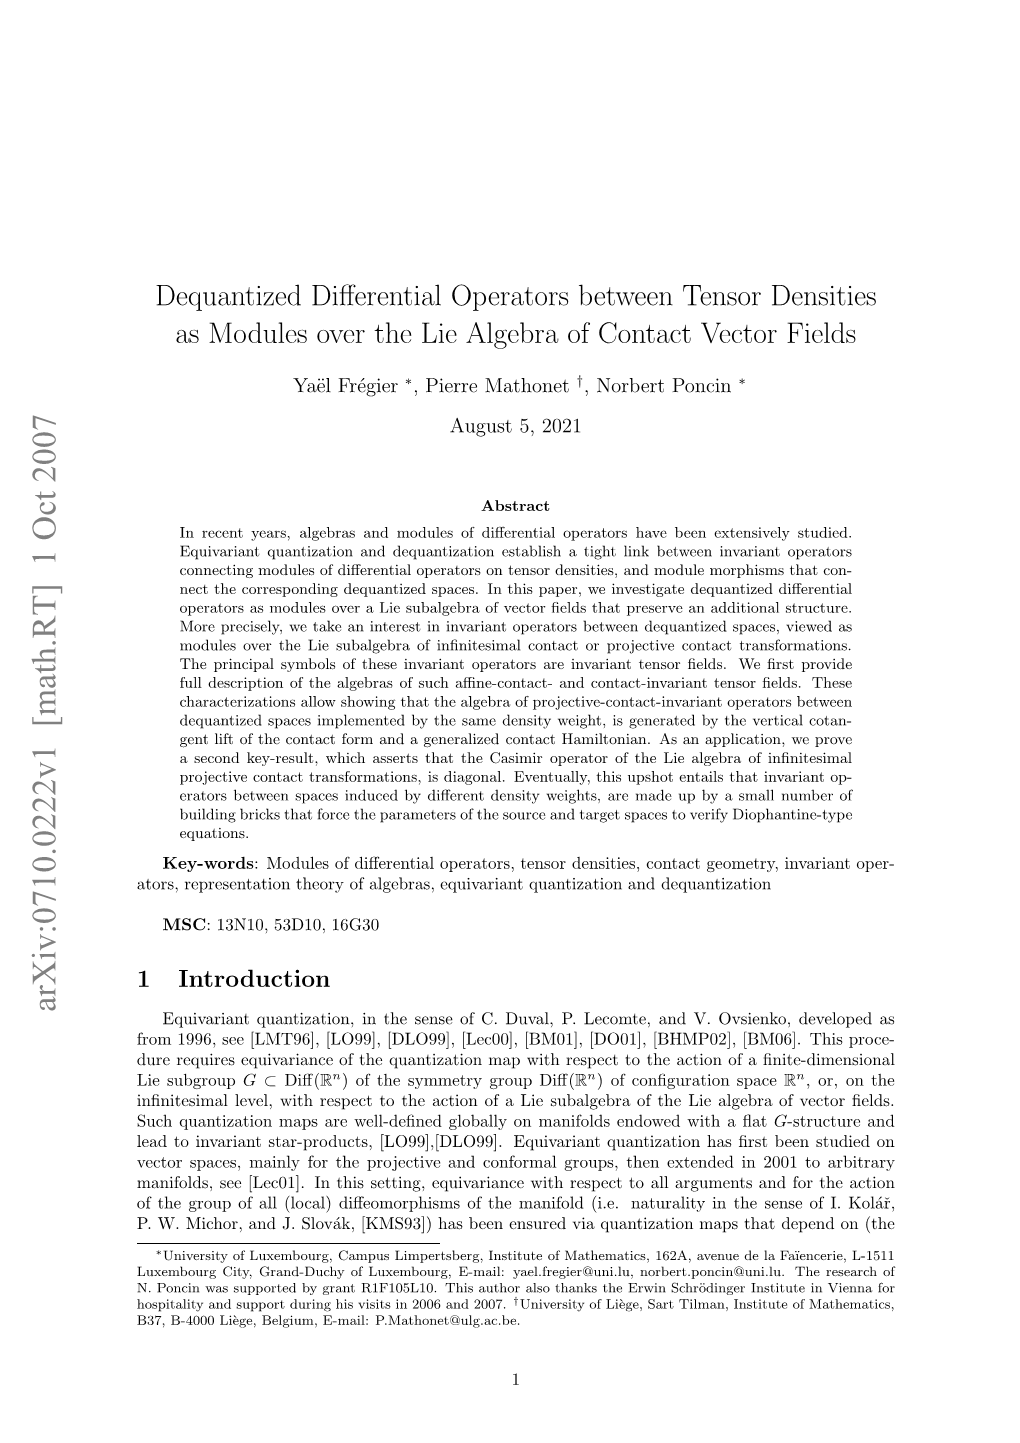 Dequantized Differential Operators Between Tensor Densities As